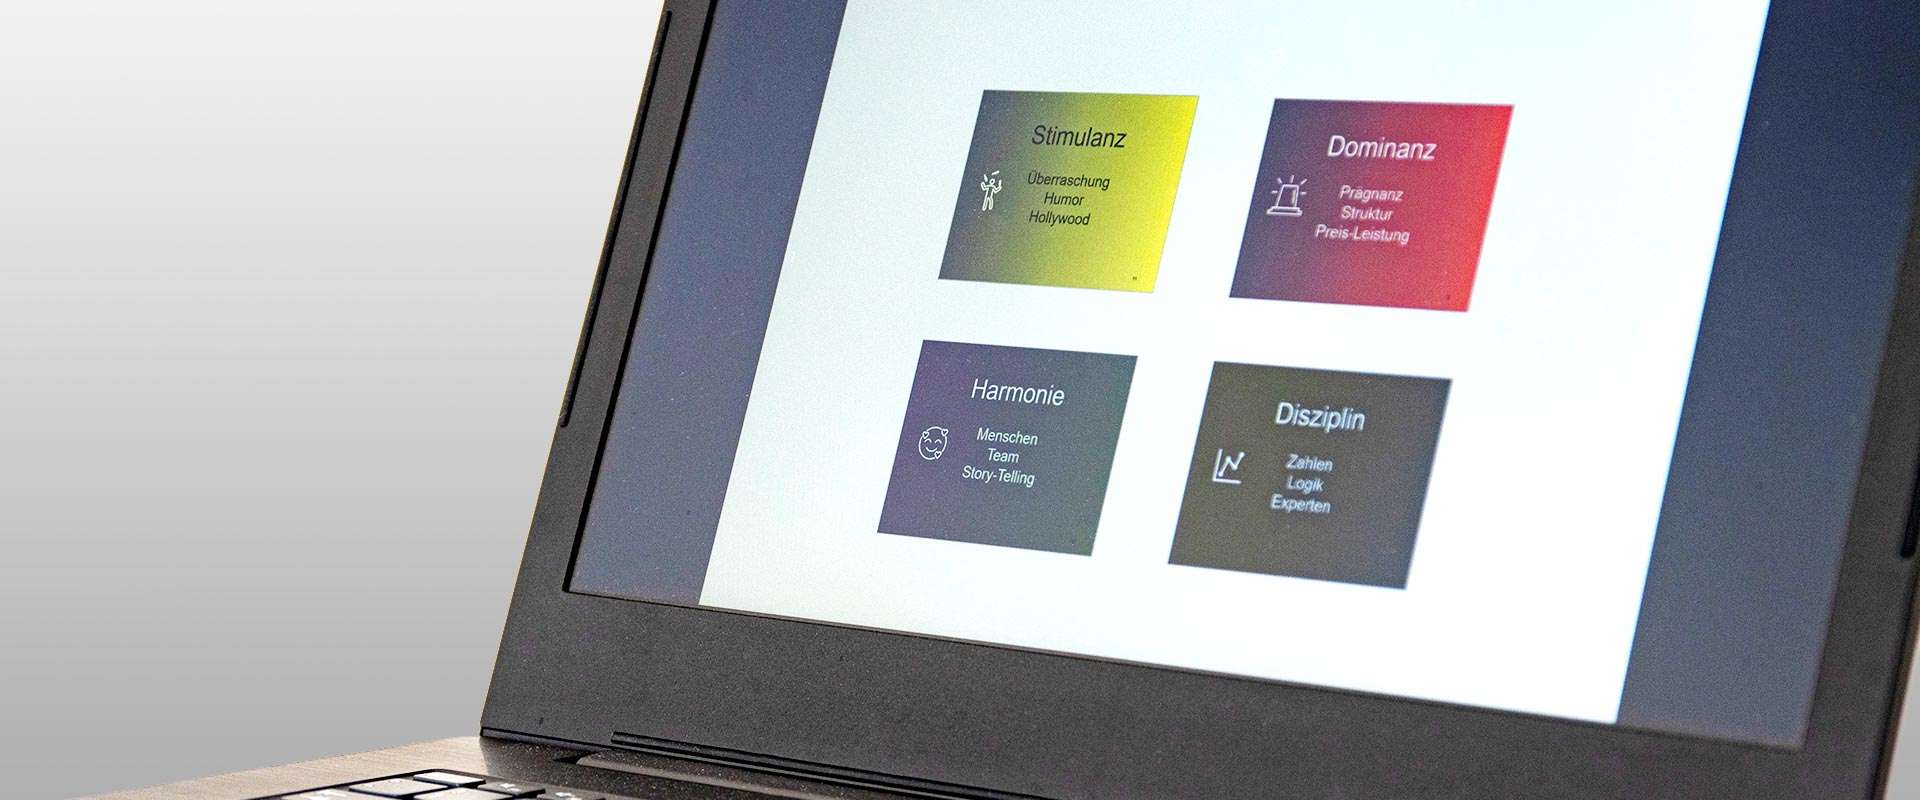 Laptopbildschirm zeigt eine PowerPoint-Präsentationsfolie.